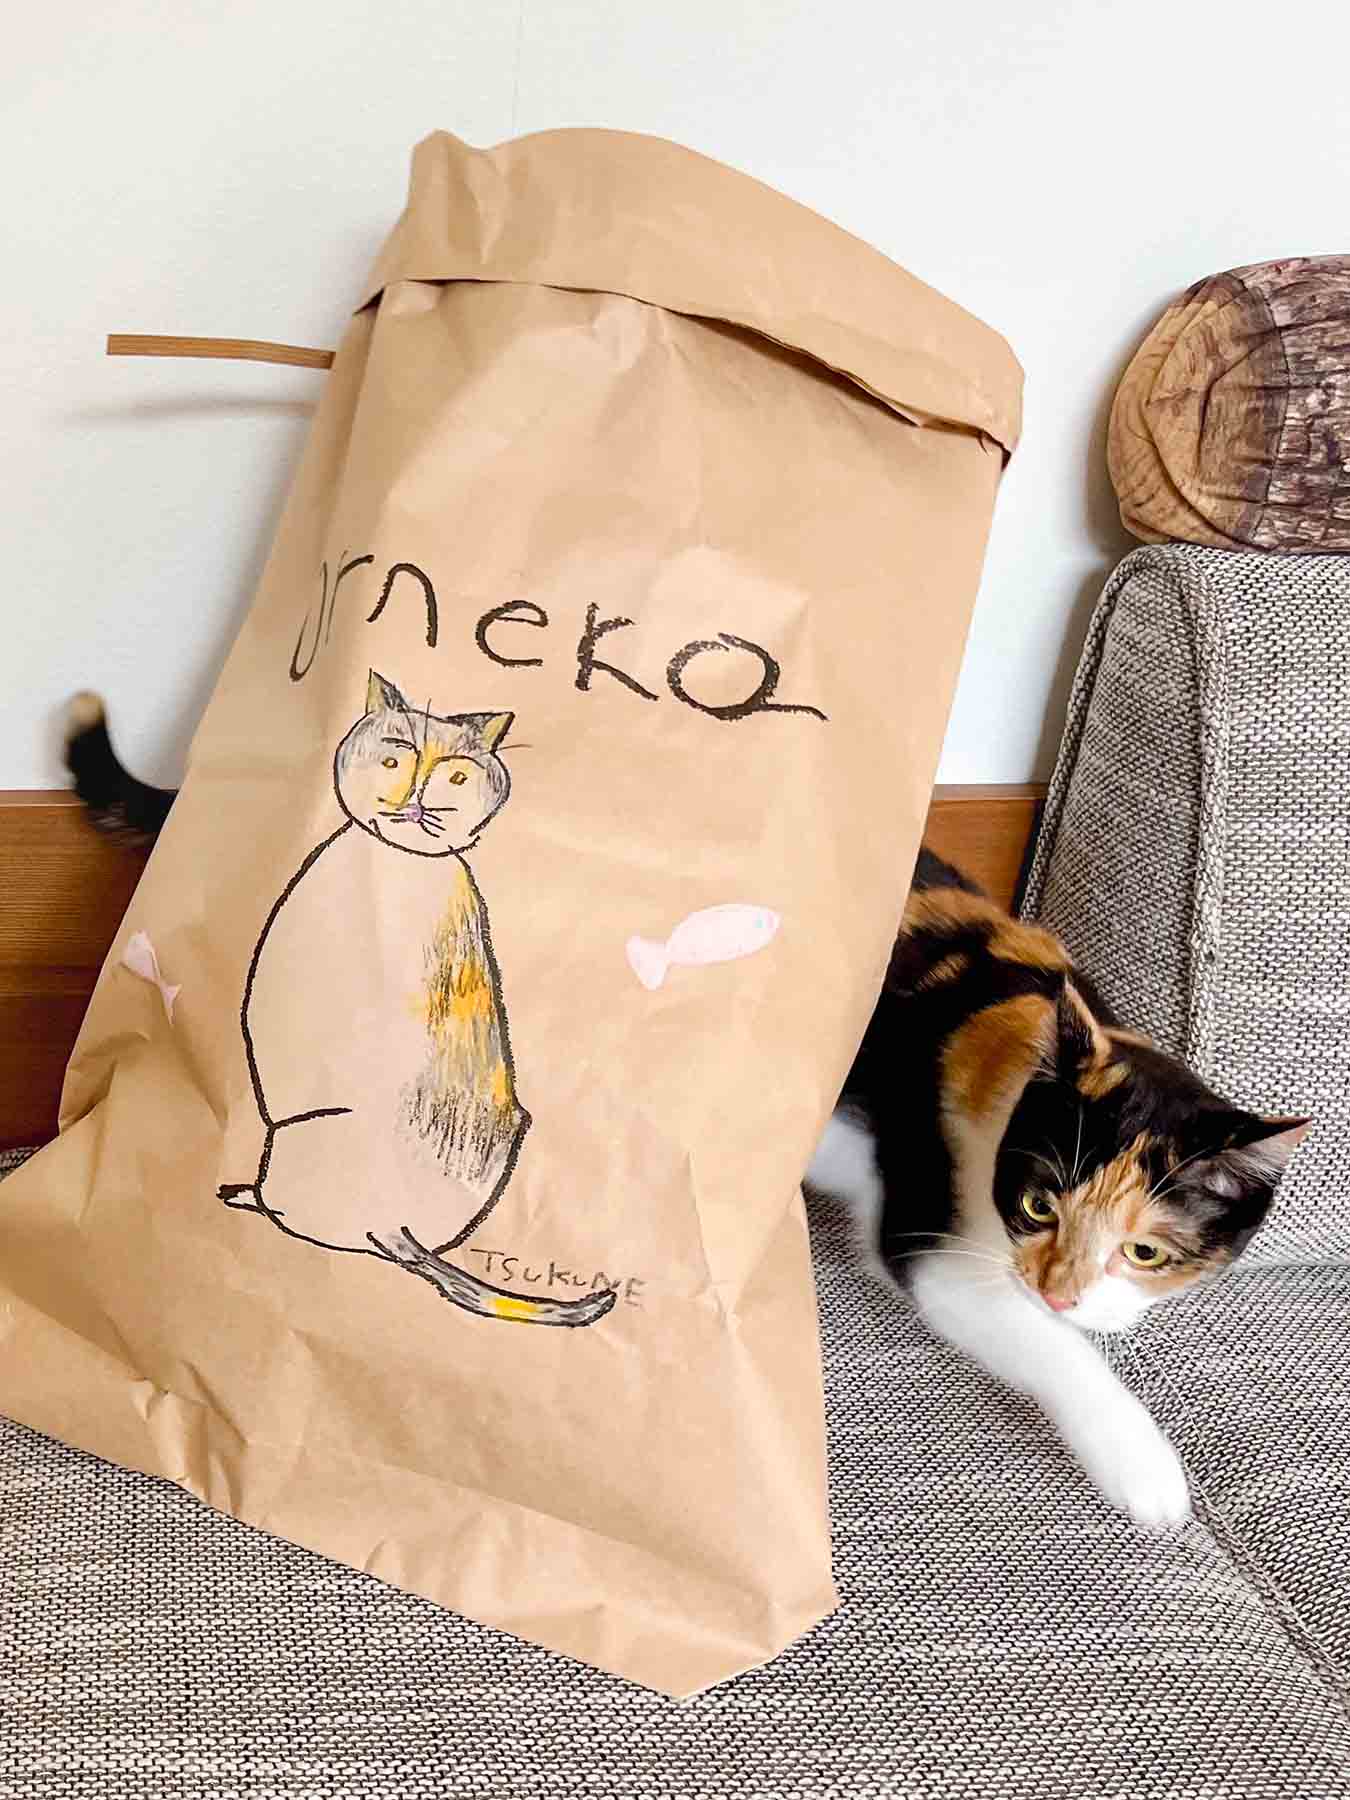 オルネコ・ネコのための米袋／orneko